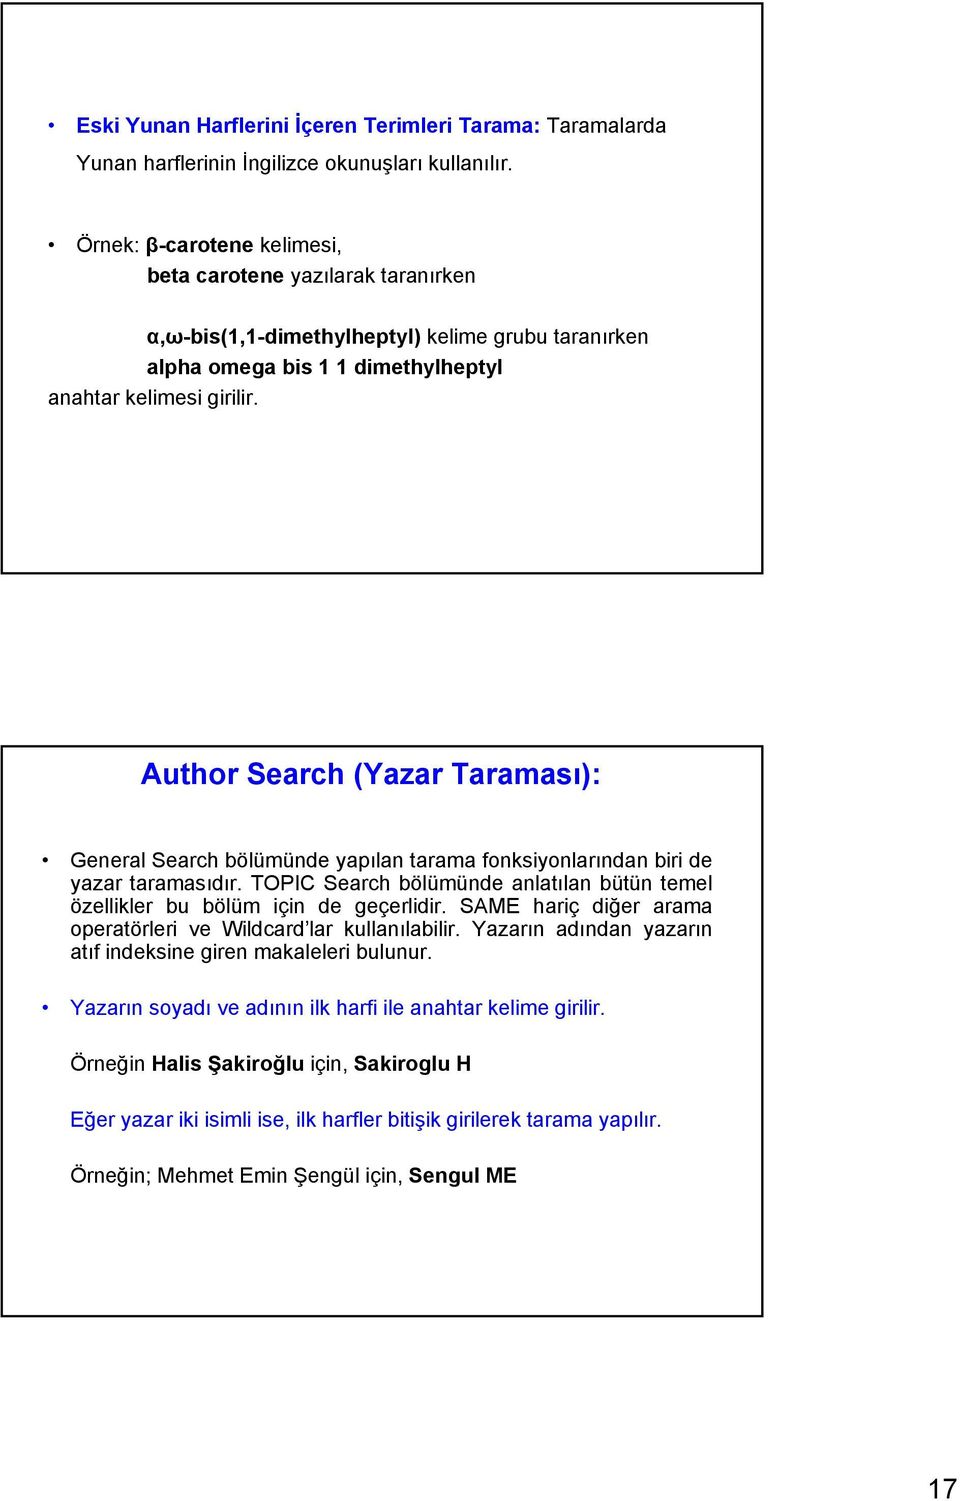 Author Search (Yazar Taraması): General Search bölümünde yapılan tarama fonksiyonlarından biri de yazar taramasıdır.